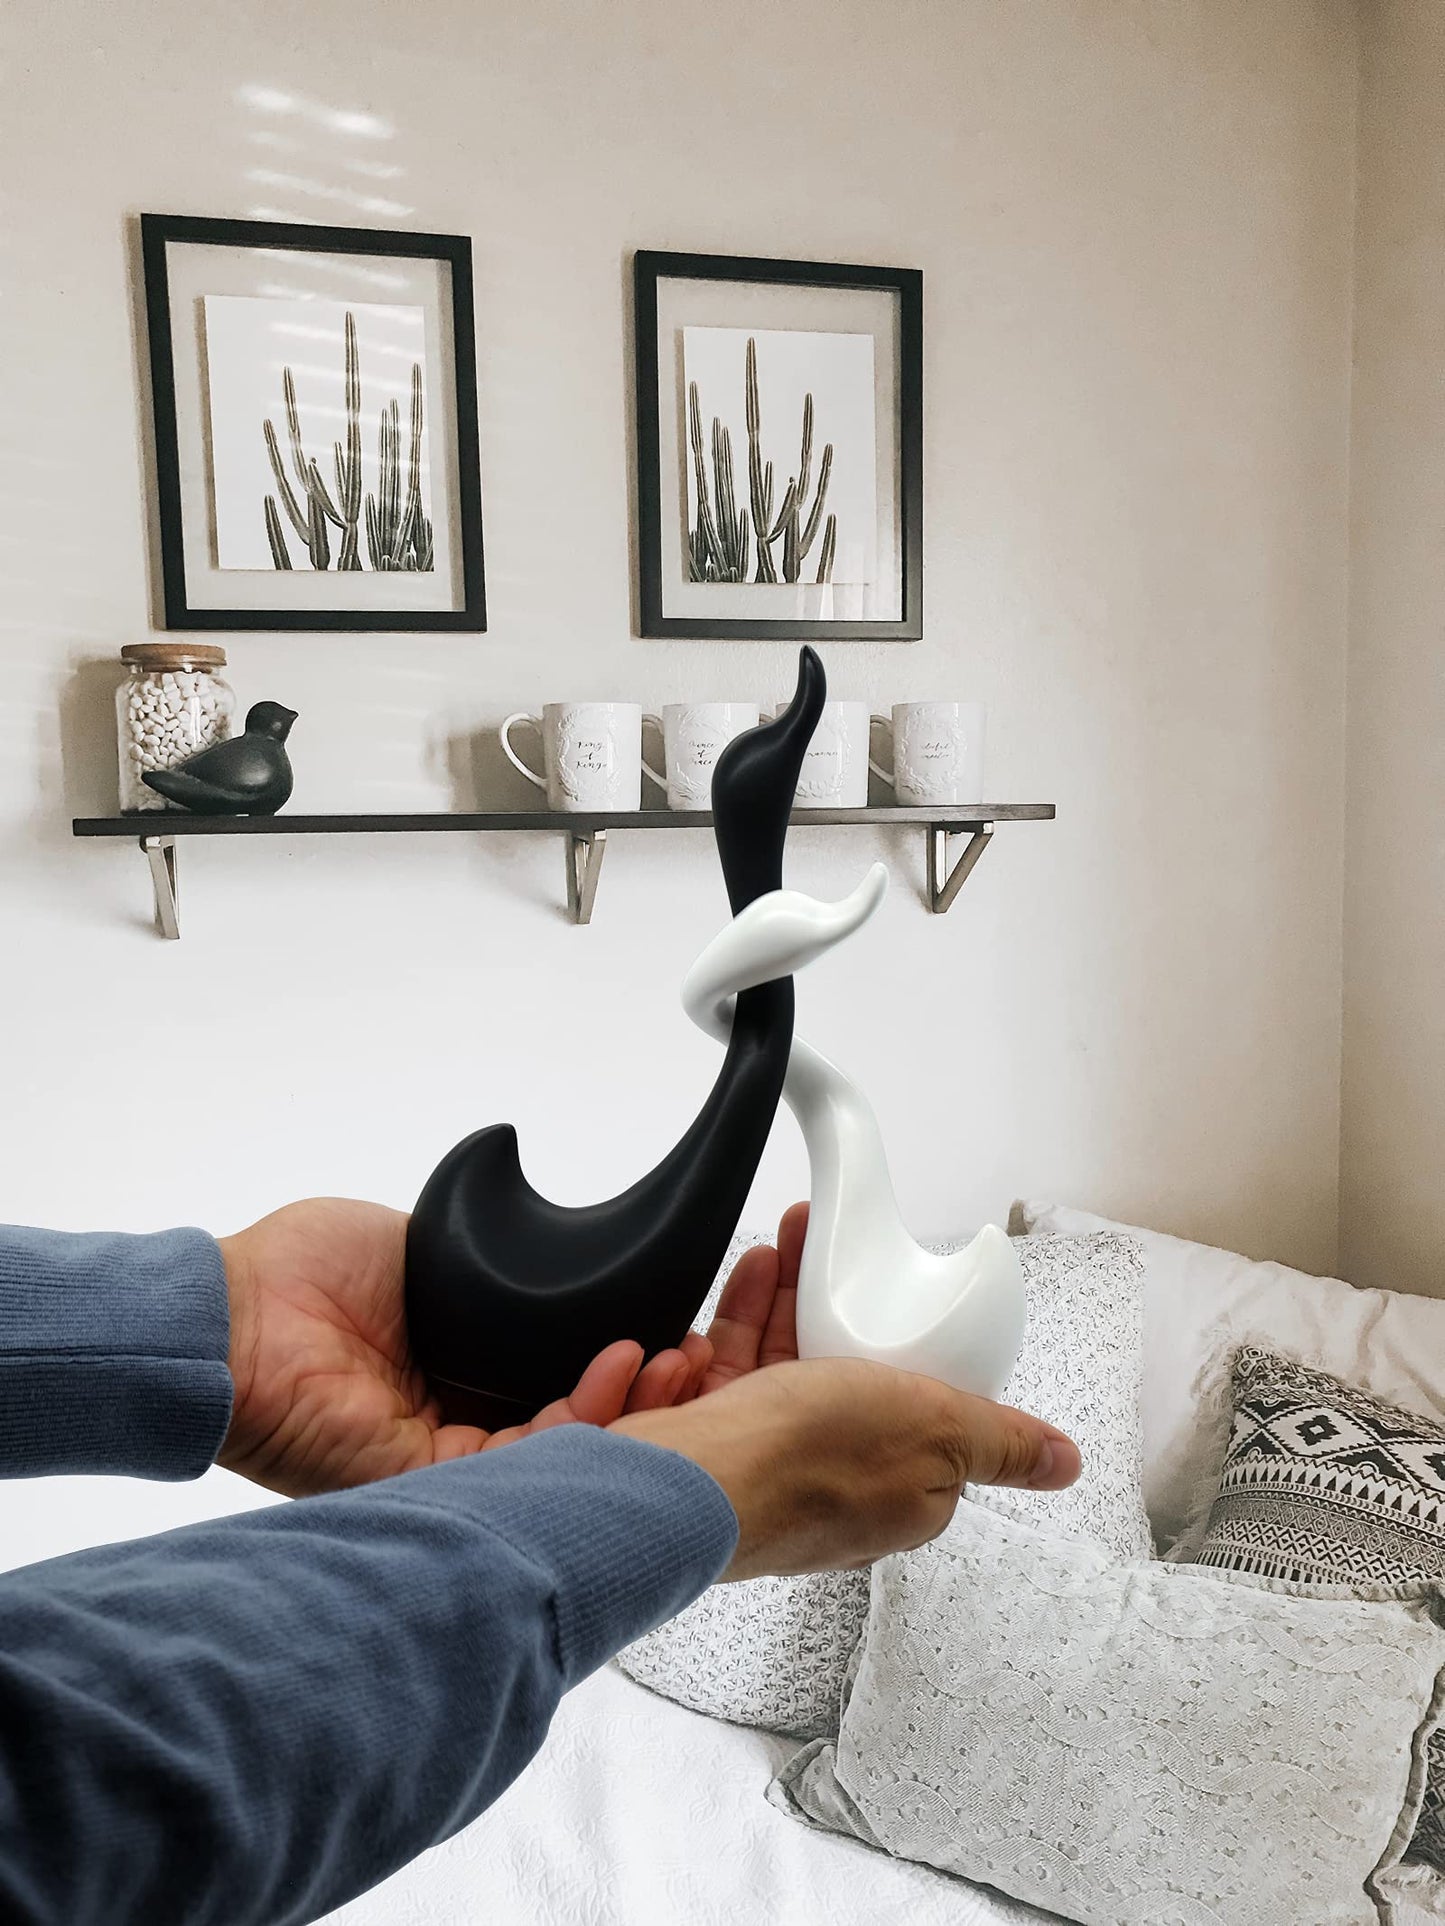 Pareja de cisnes de cerámica en Blanco y Negro - Escultura compuesta por Dos cisnes - Figura Decorativa de 23 cm de Altura - Cisne de la Suerte y la armonía